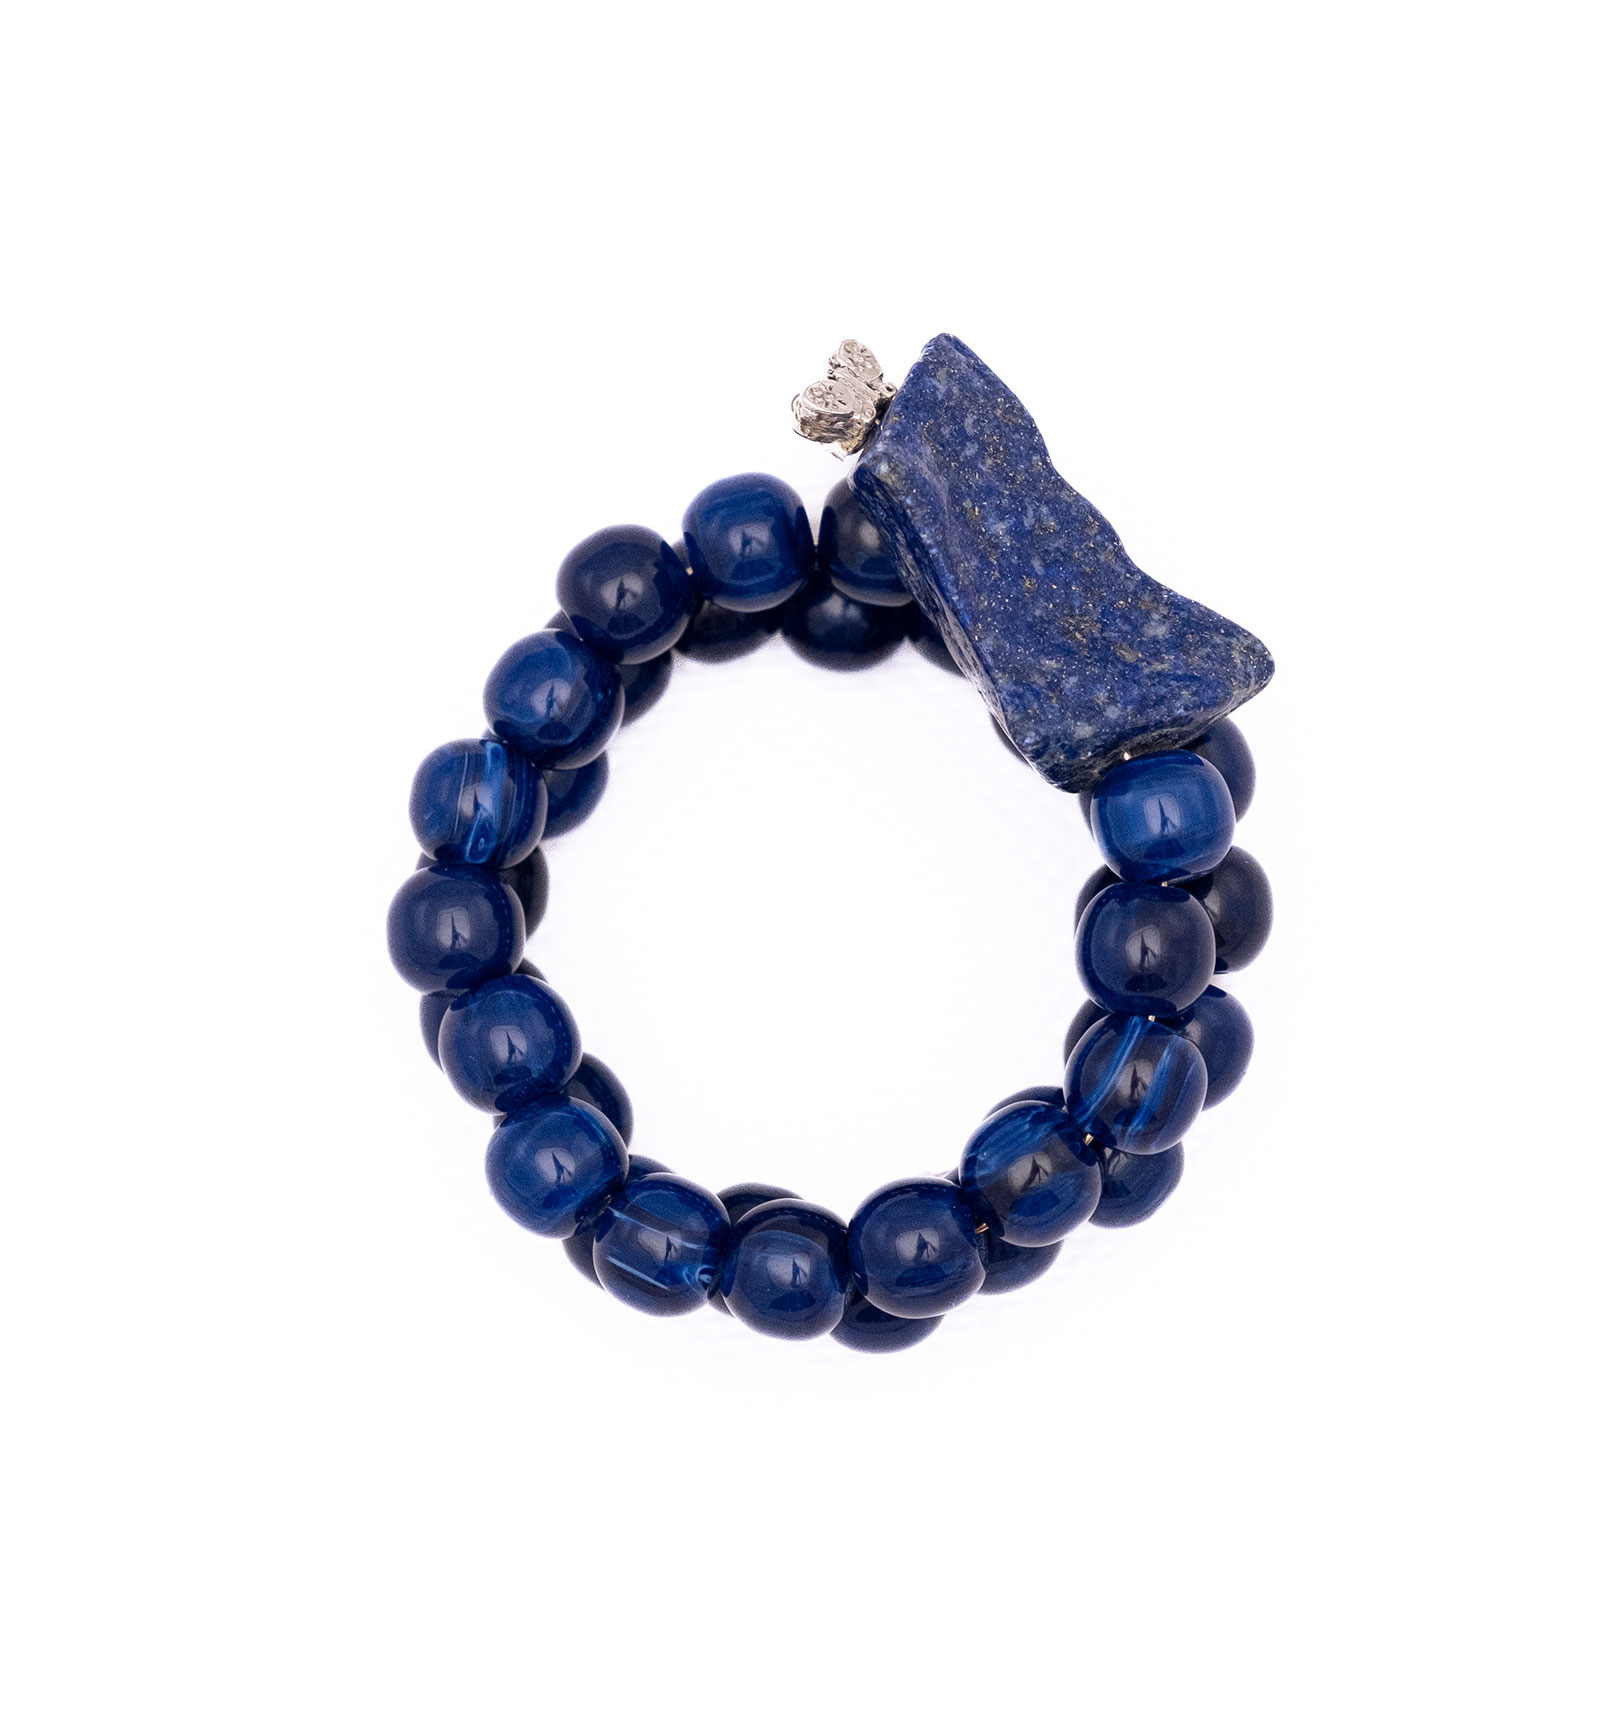 Bracelet made of artificial resin, lapis lazuli and tin